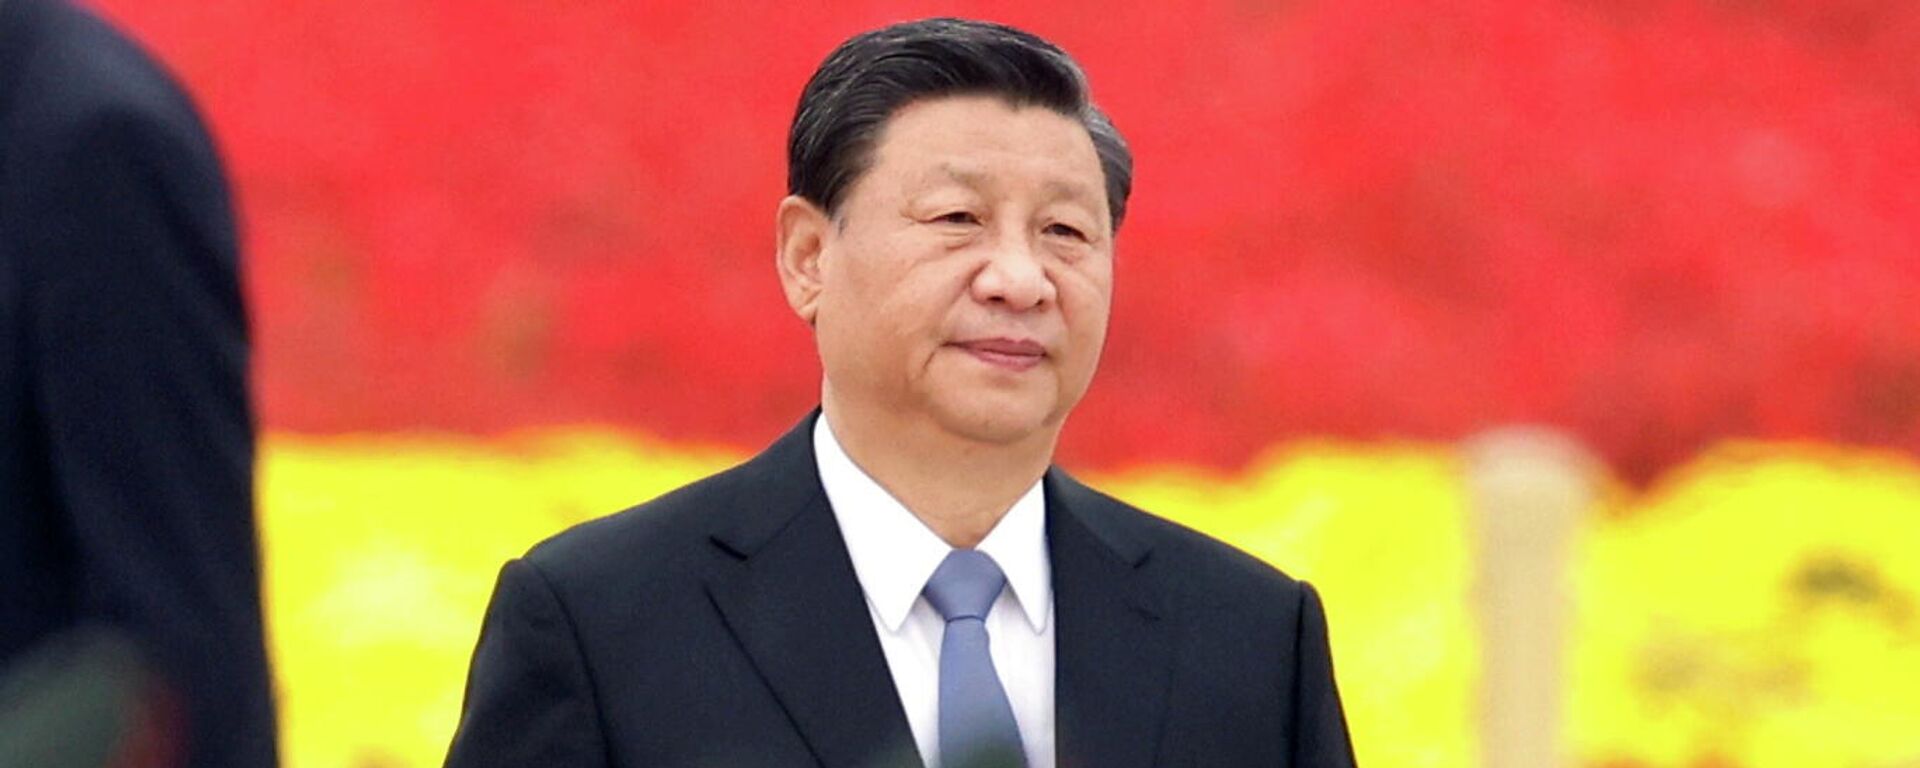 Xi Jinping, presidente de China - Sputnik Mundo, 1920, 09.10.2021